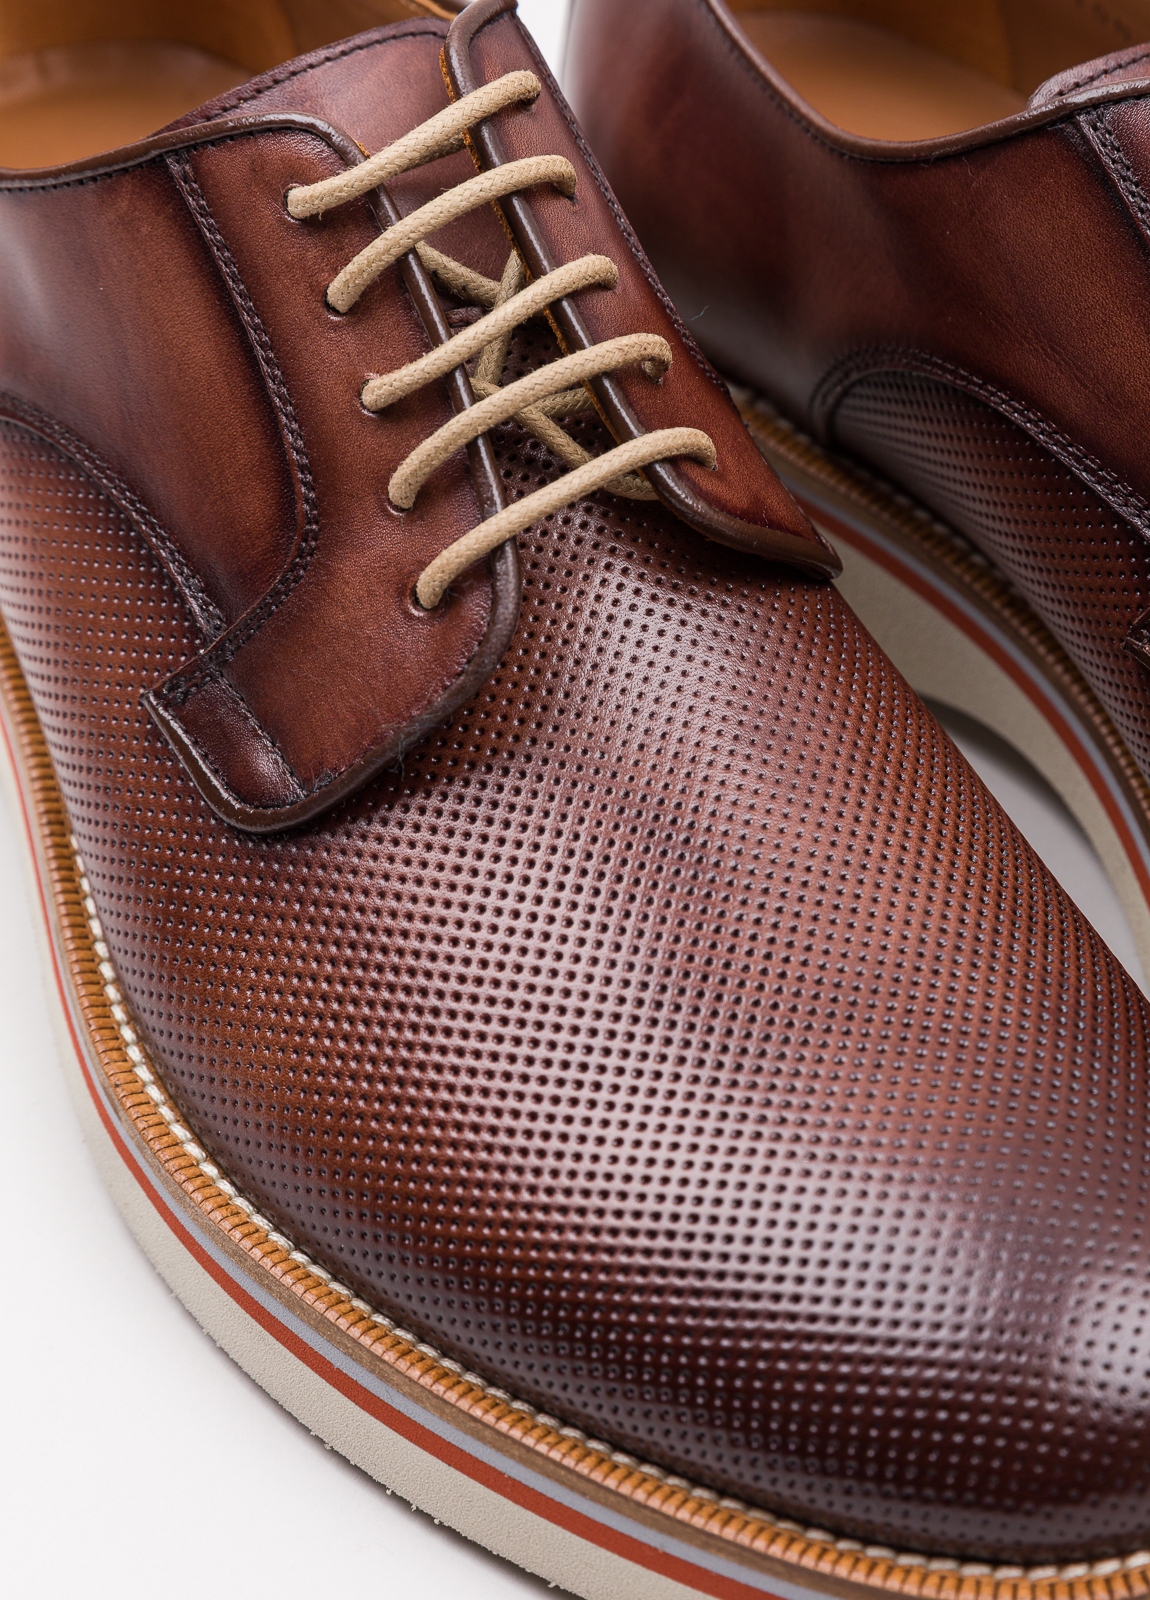 Zapato sport wear furest colección troquelado marrón - Ítem4